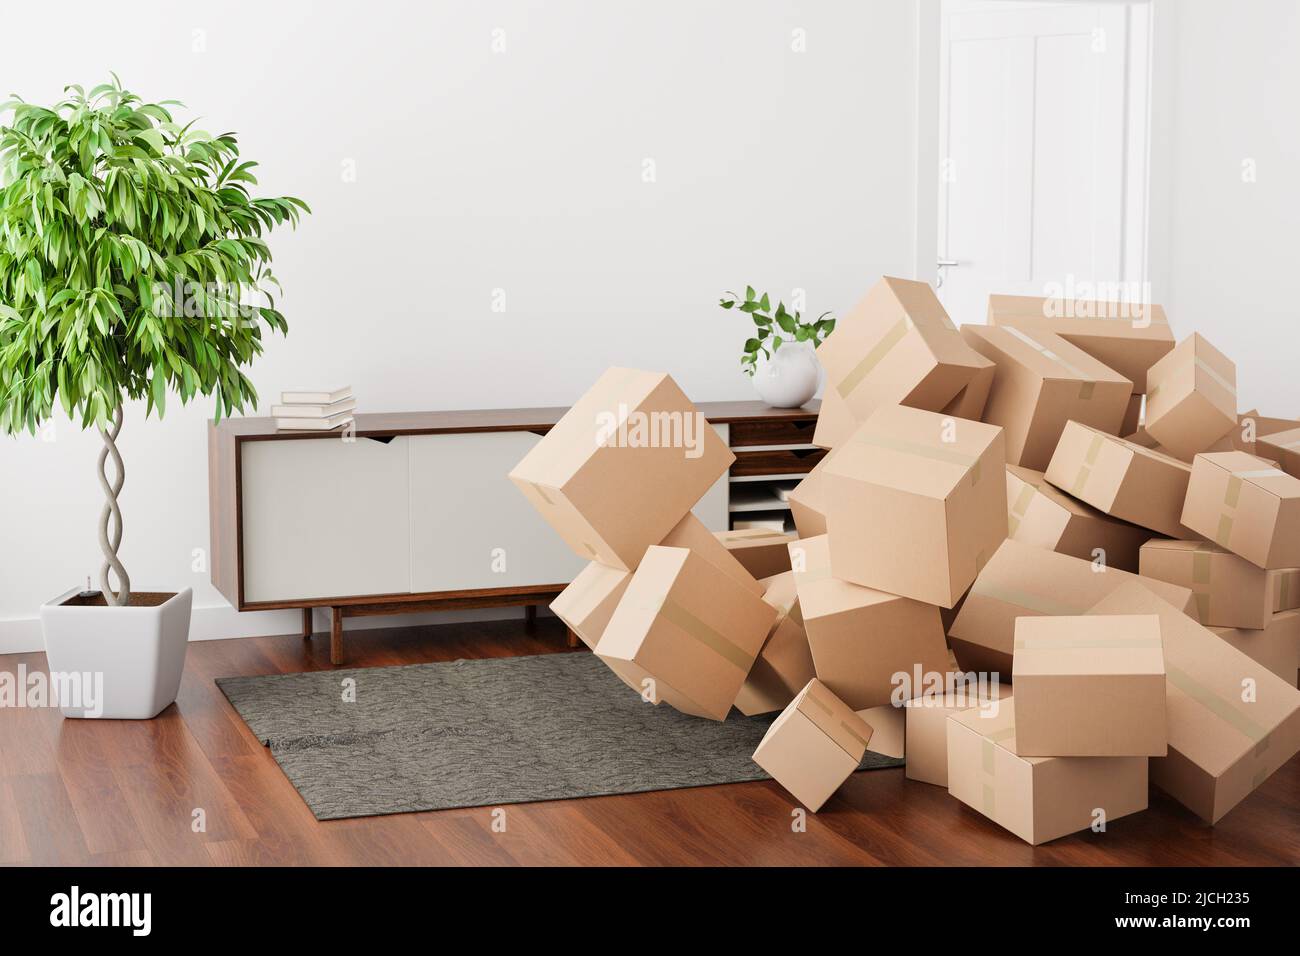 Cajas de cartón de diferentes tamaños que caen en una sala de estar. Concepto de imagen para el consumismo, compras en línea Foto de stock